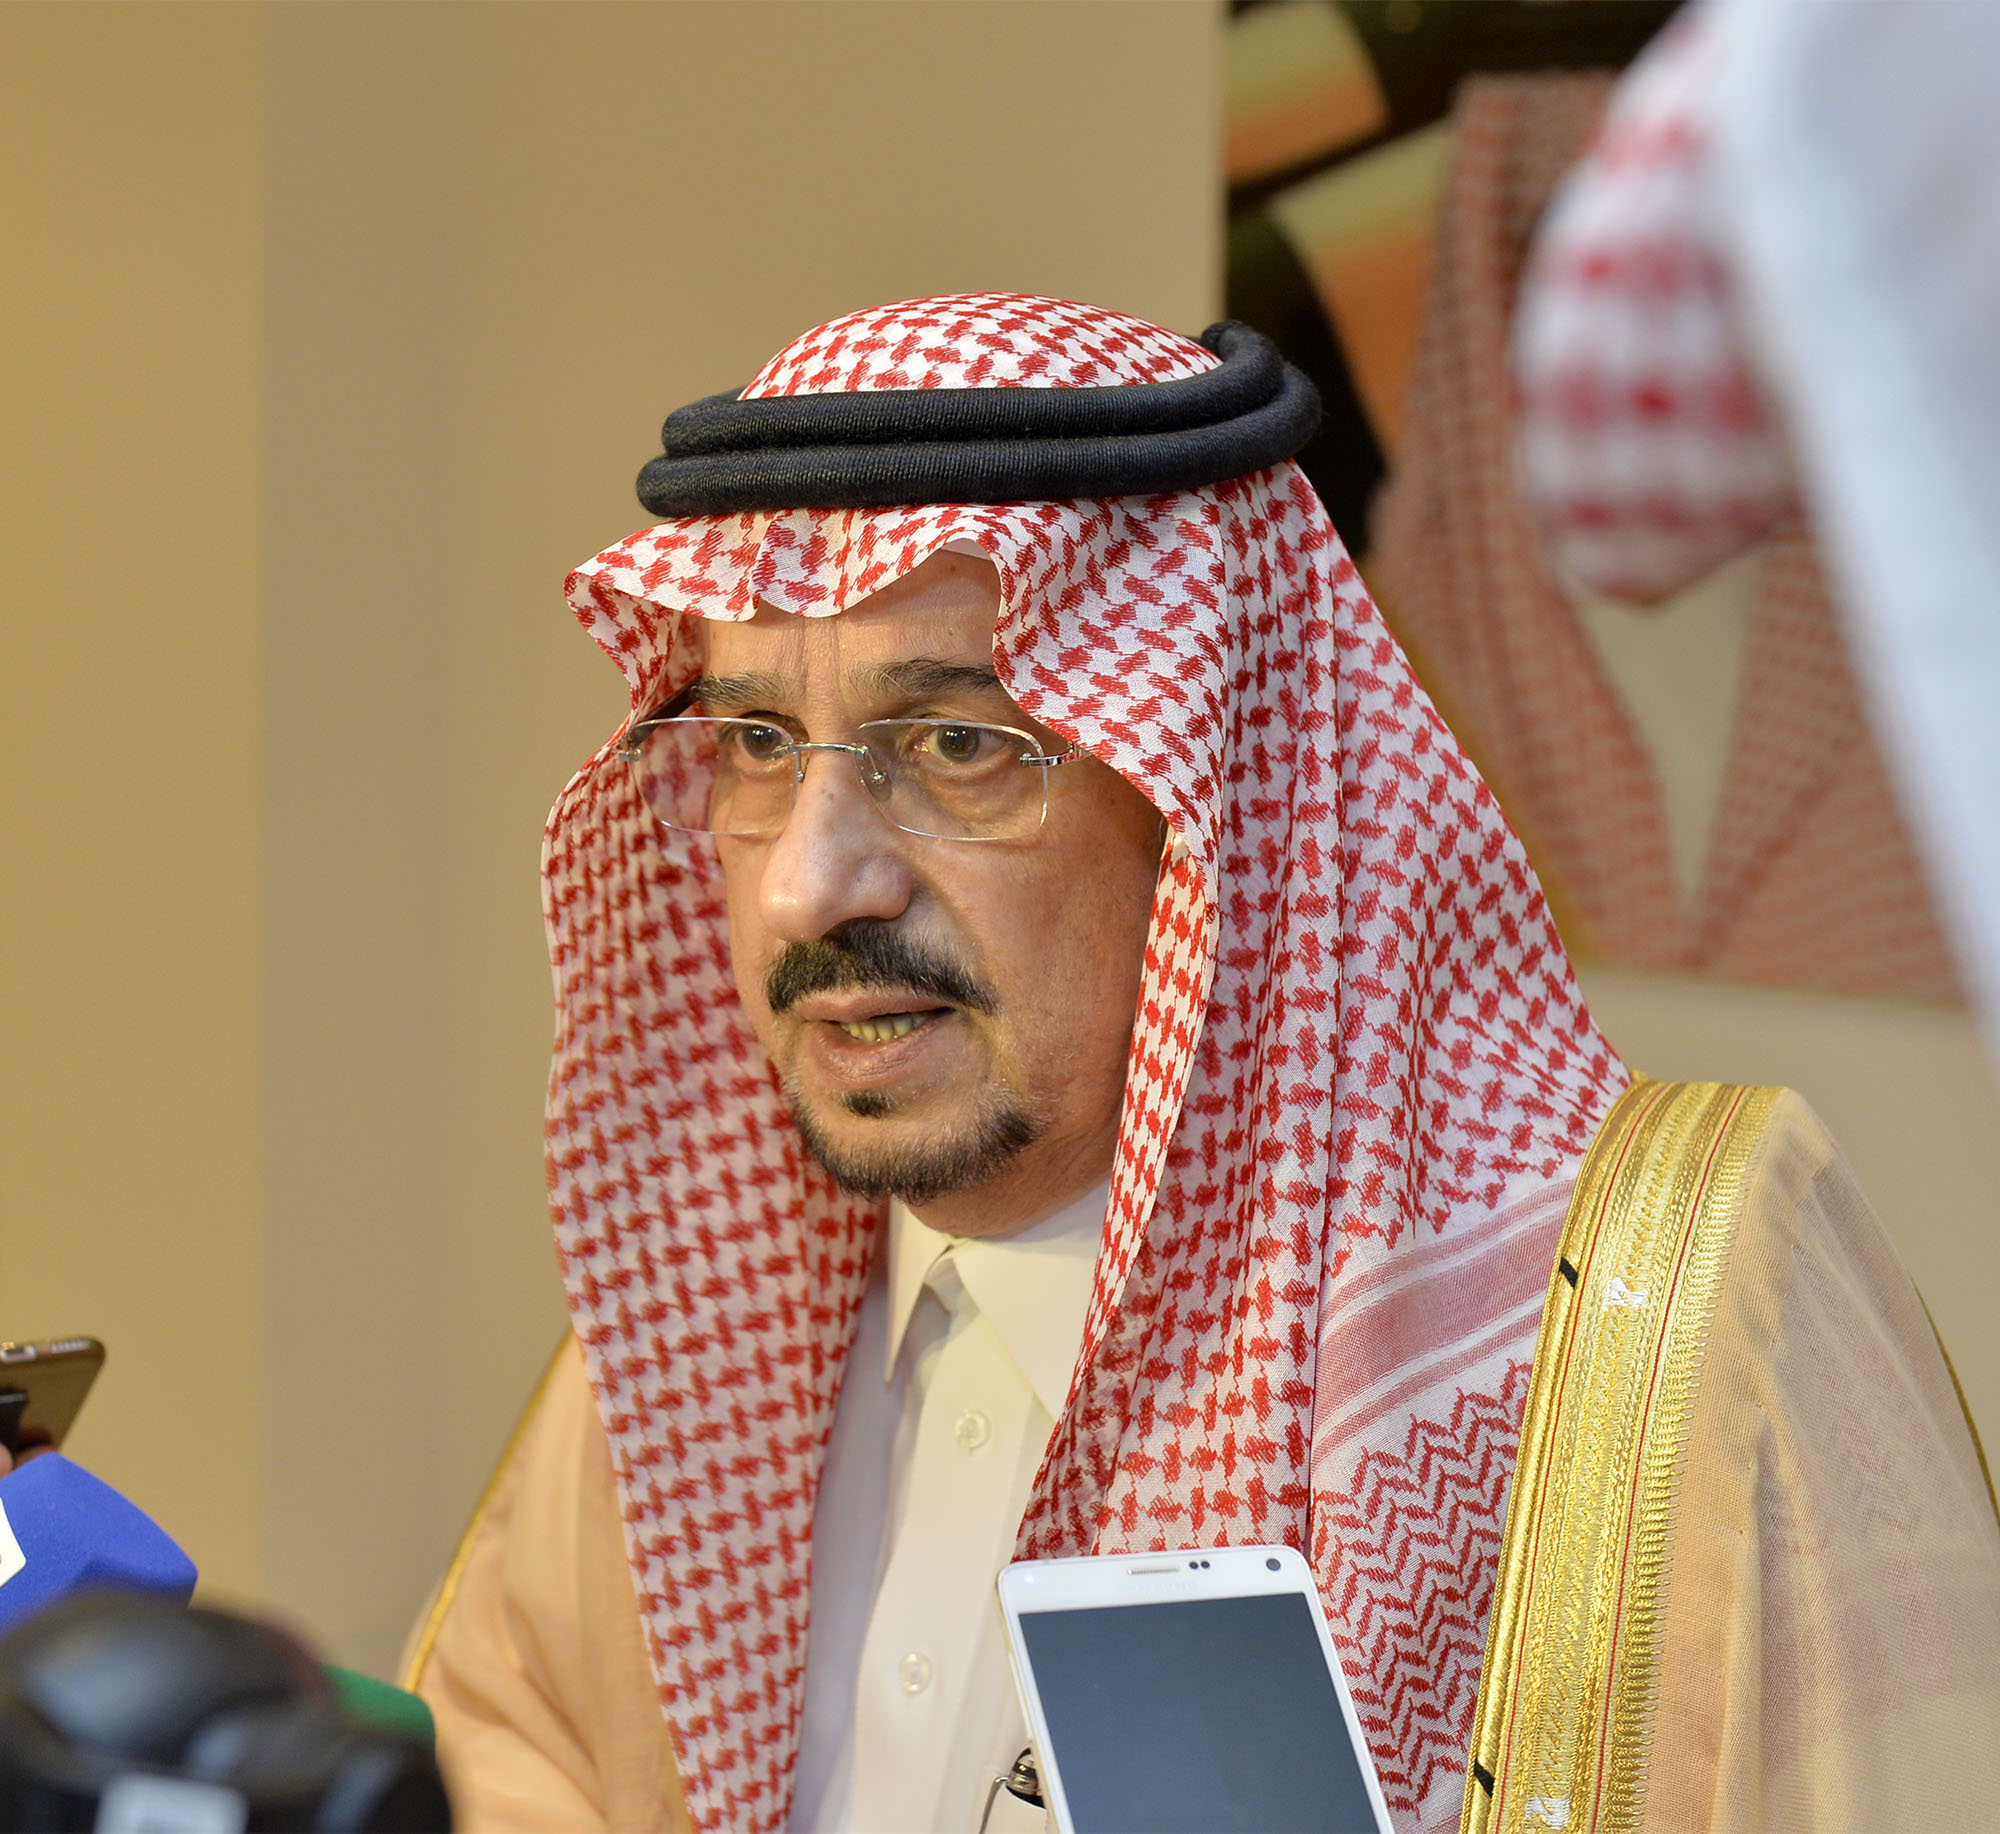 أمير الرياض عن الأوامر والقرارات الملكية: أيُ أمرٍ يُتخذ فليتأكد المواطن أنه في صالحه